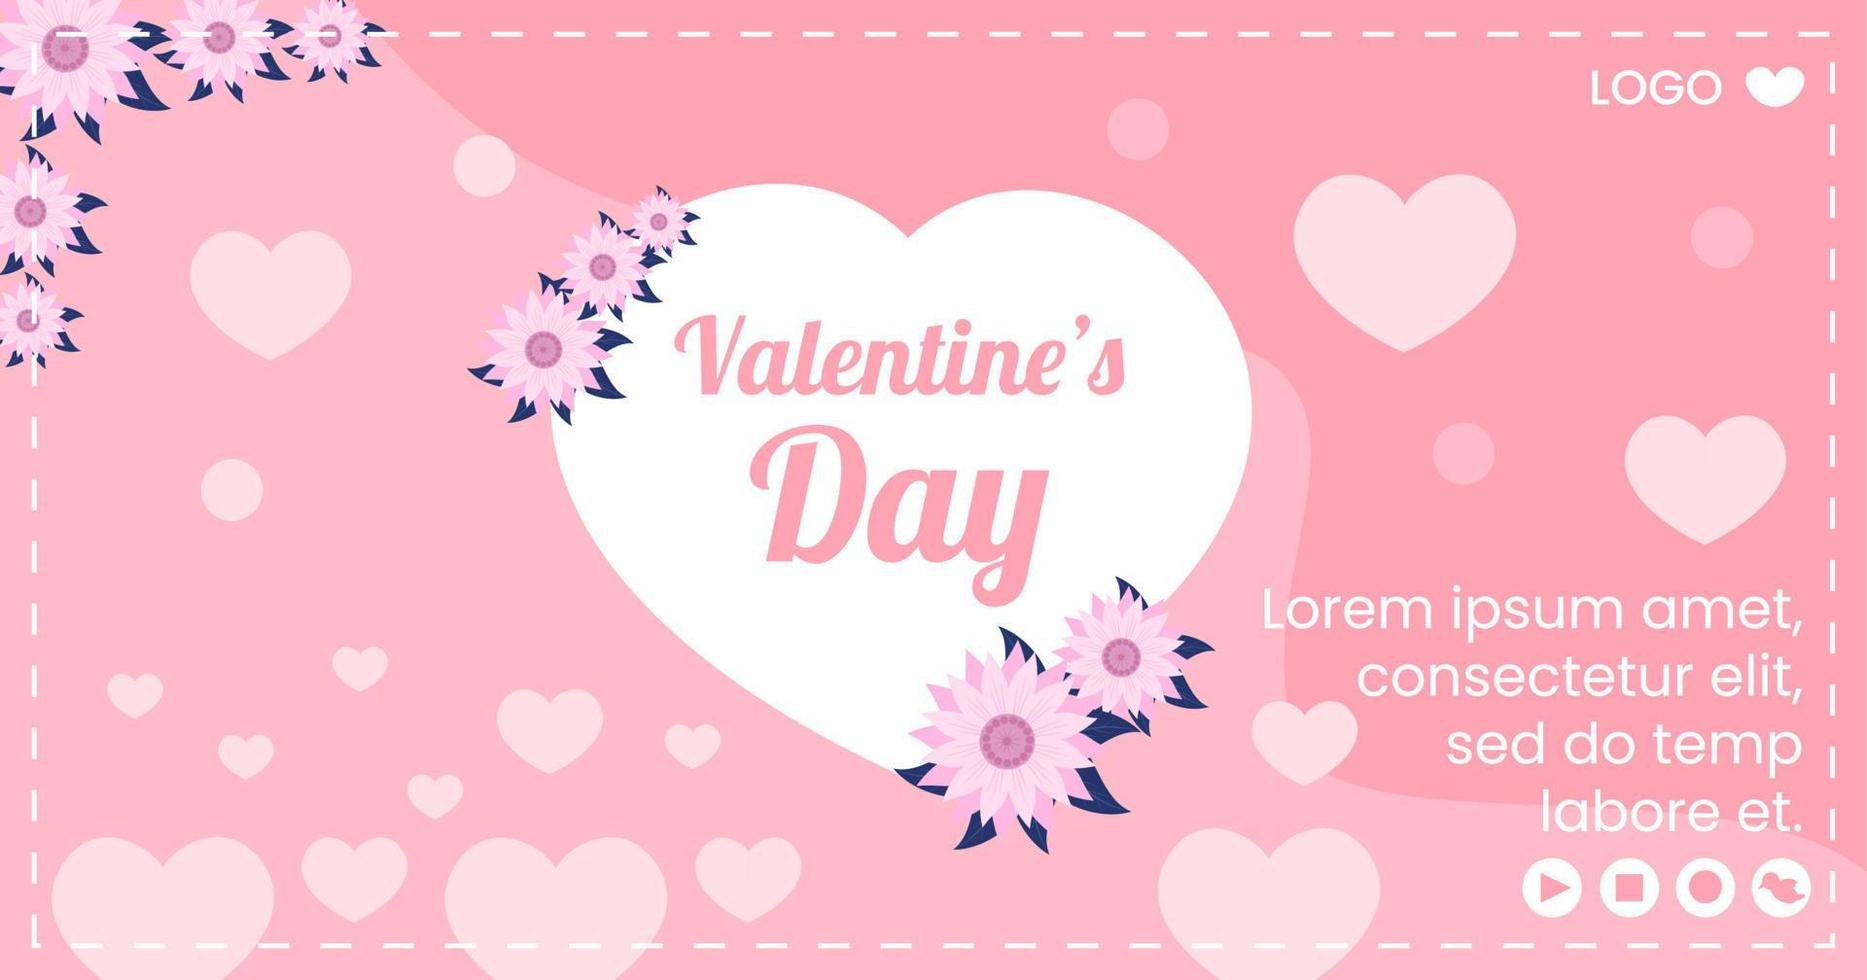 Happy Valentine's Day Post Template flaches Design Illustration editierbar von quadratischem Hintergrund für Social Media, Liebesgrußkarte oder Banner vektor